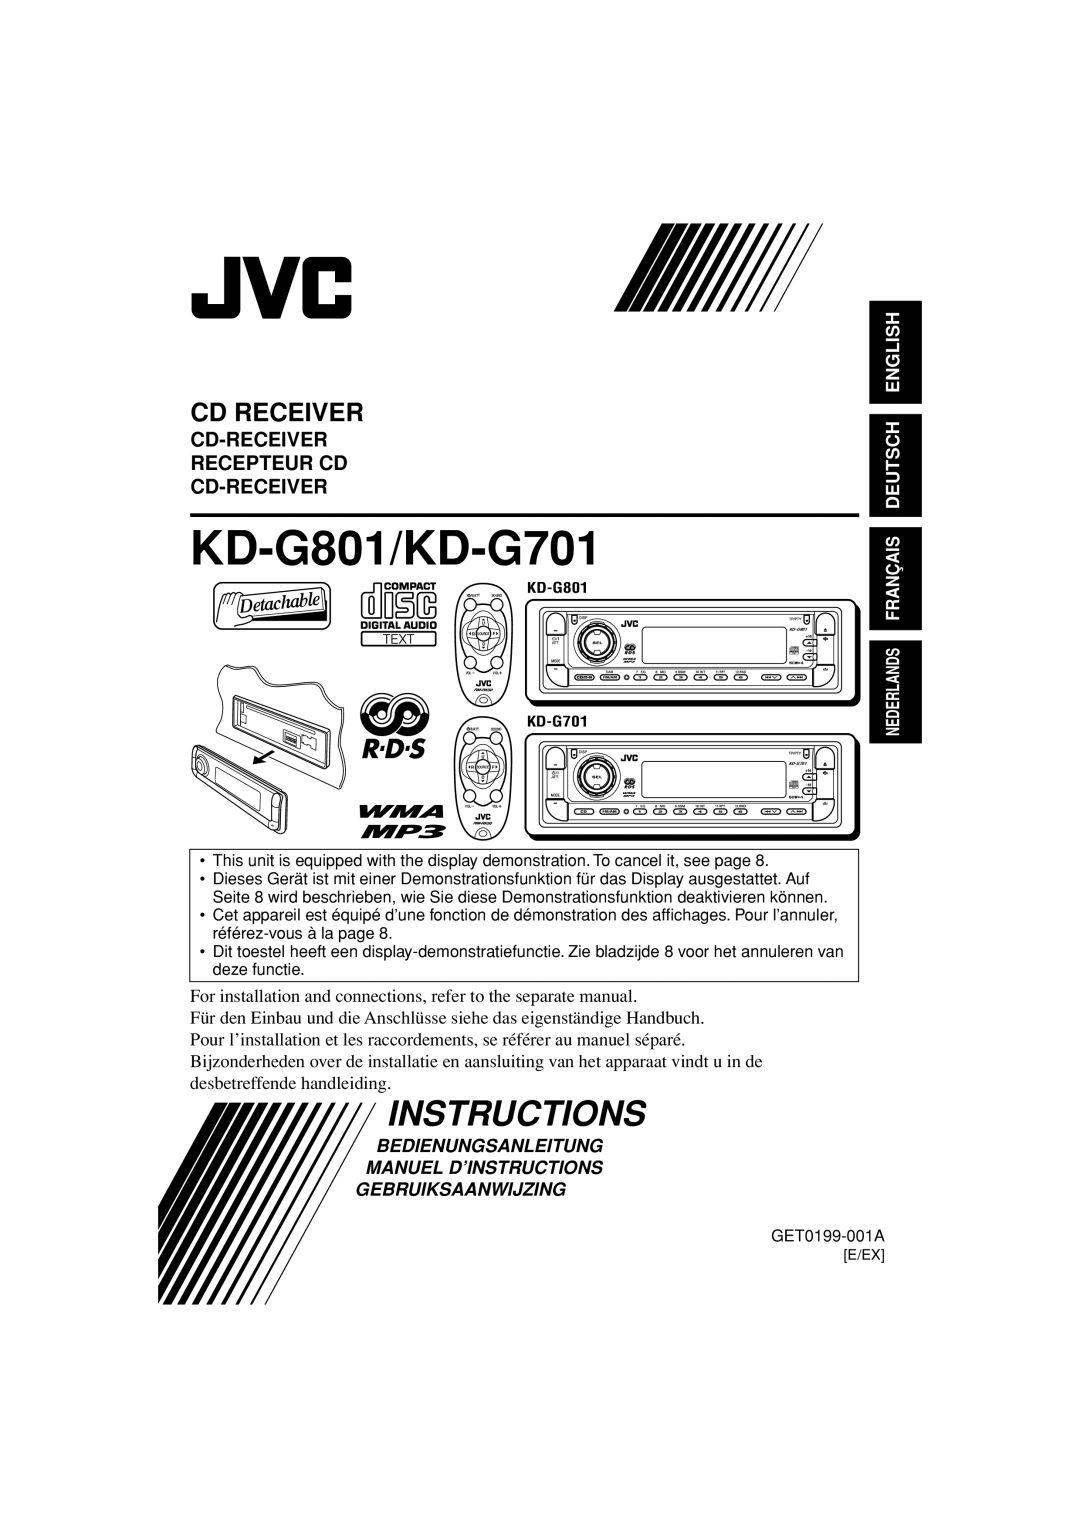 JVC GET0199-005A, GET0200-002A, GET0199-001A, GET0200-001A manual KD-G801, KD-G701 